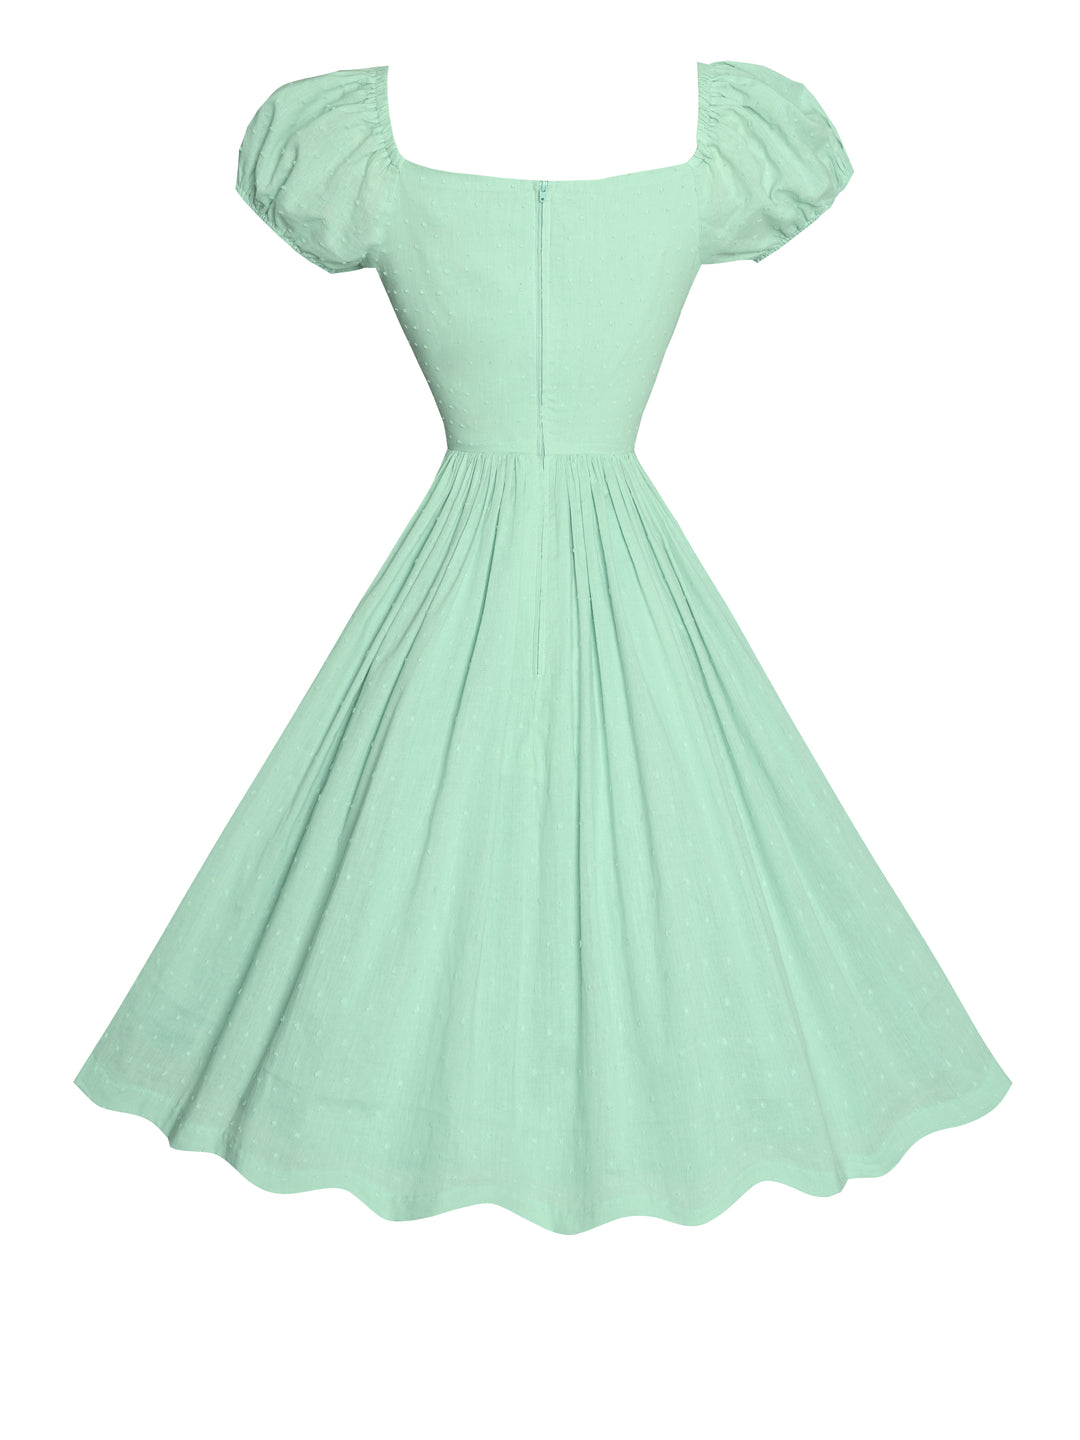 MTO - Loretta Dress in Mint Green "Dotted Swiss"